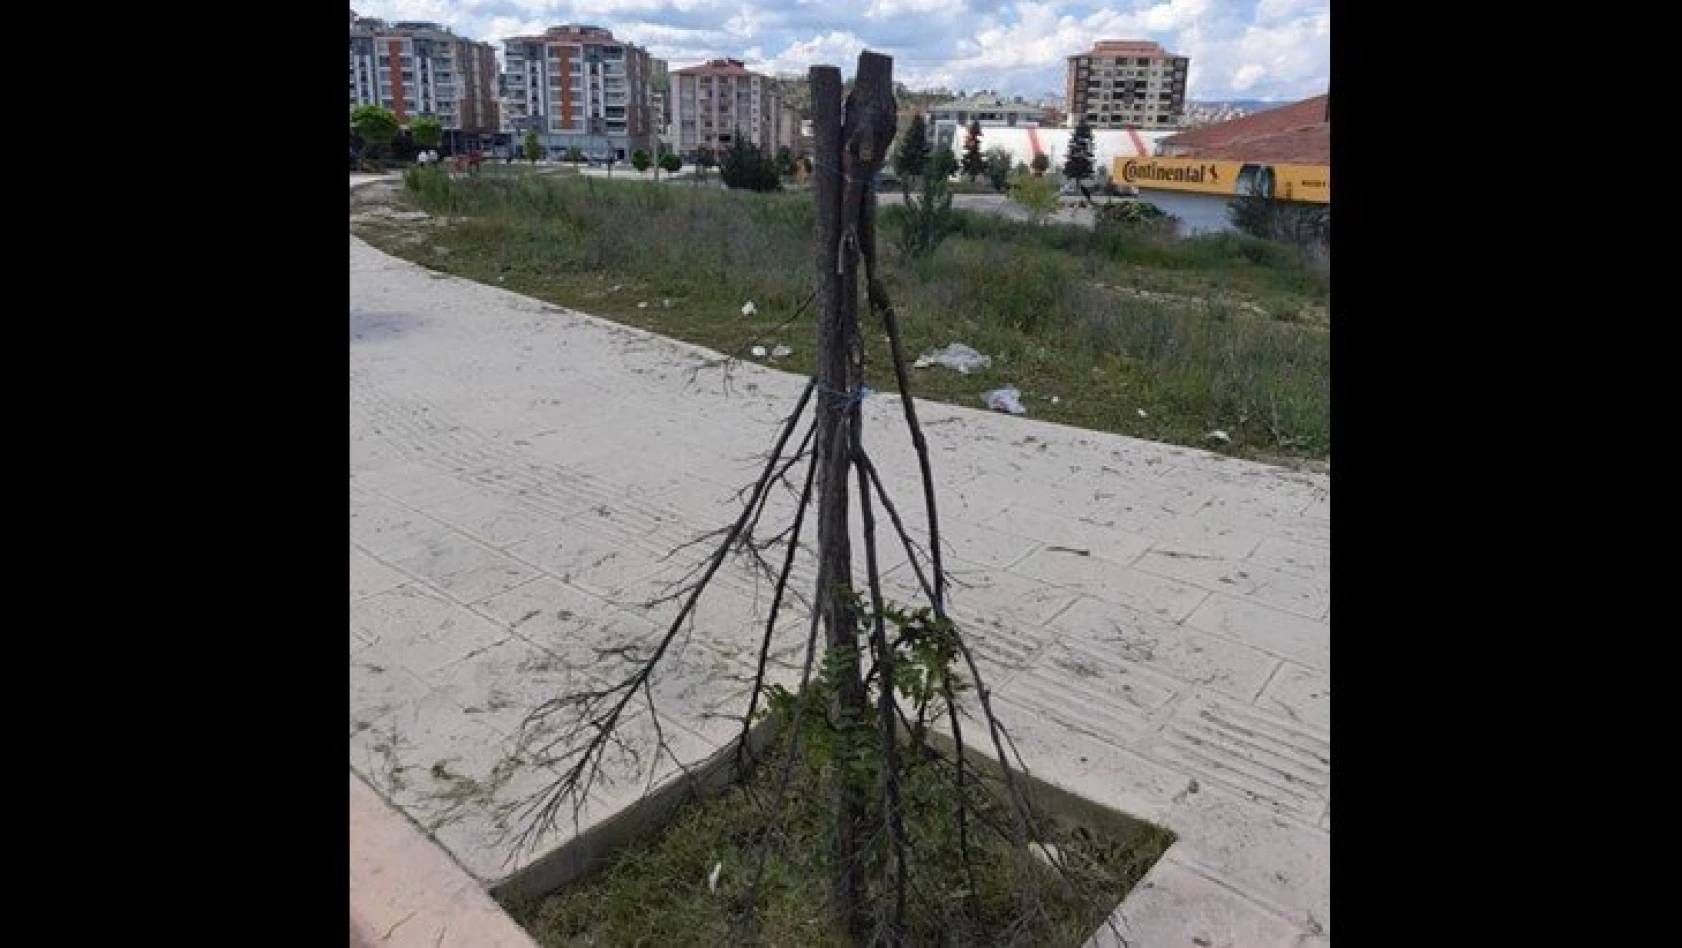 Kastamonu Belediyesi, kesilen ağaç için tepki gösterdi